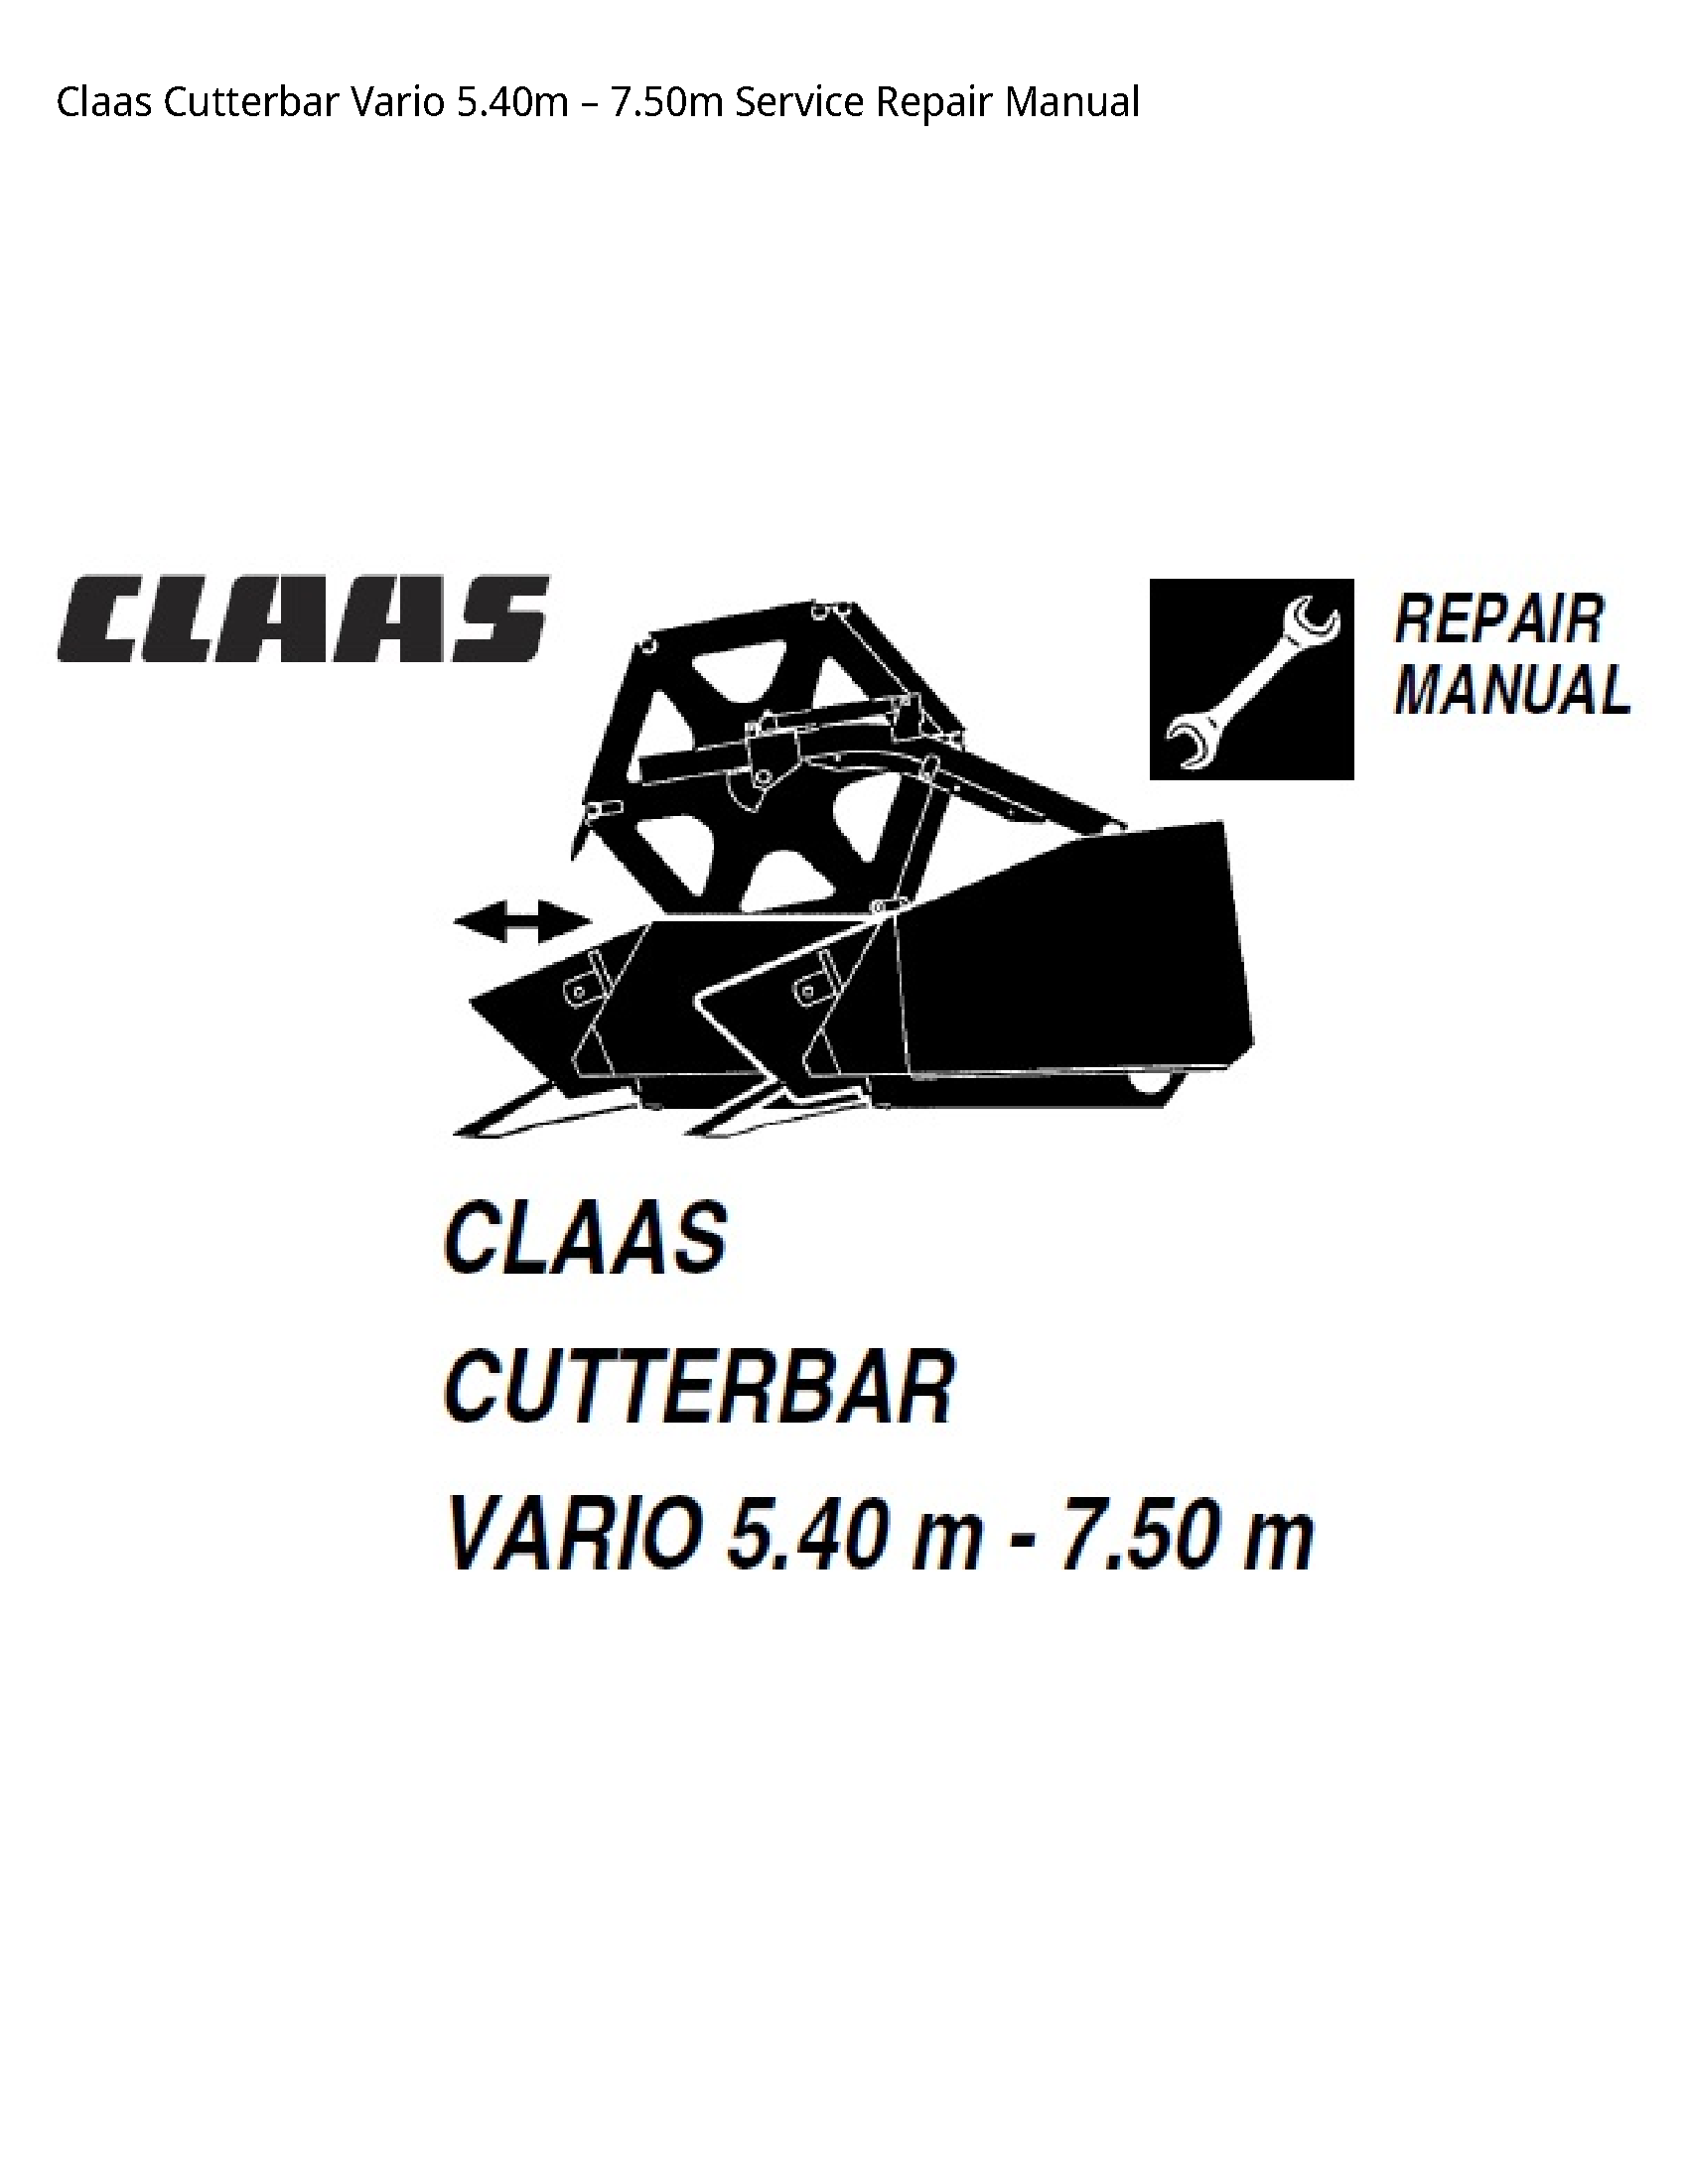 Claas 5.40m Cutterbar Vario manual